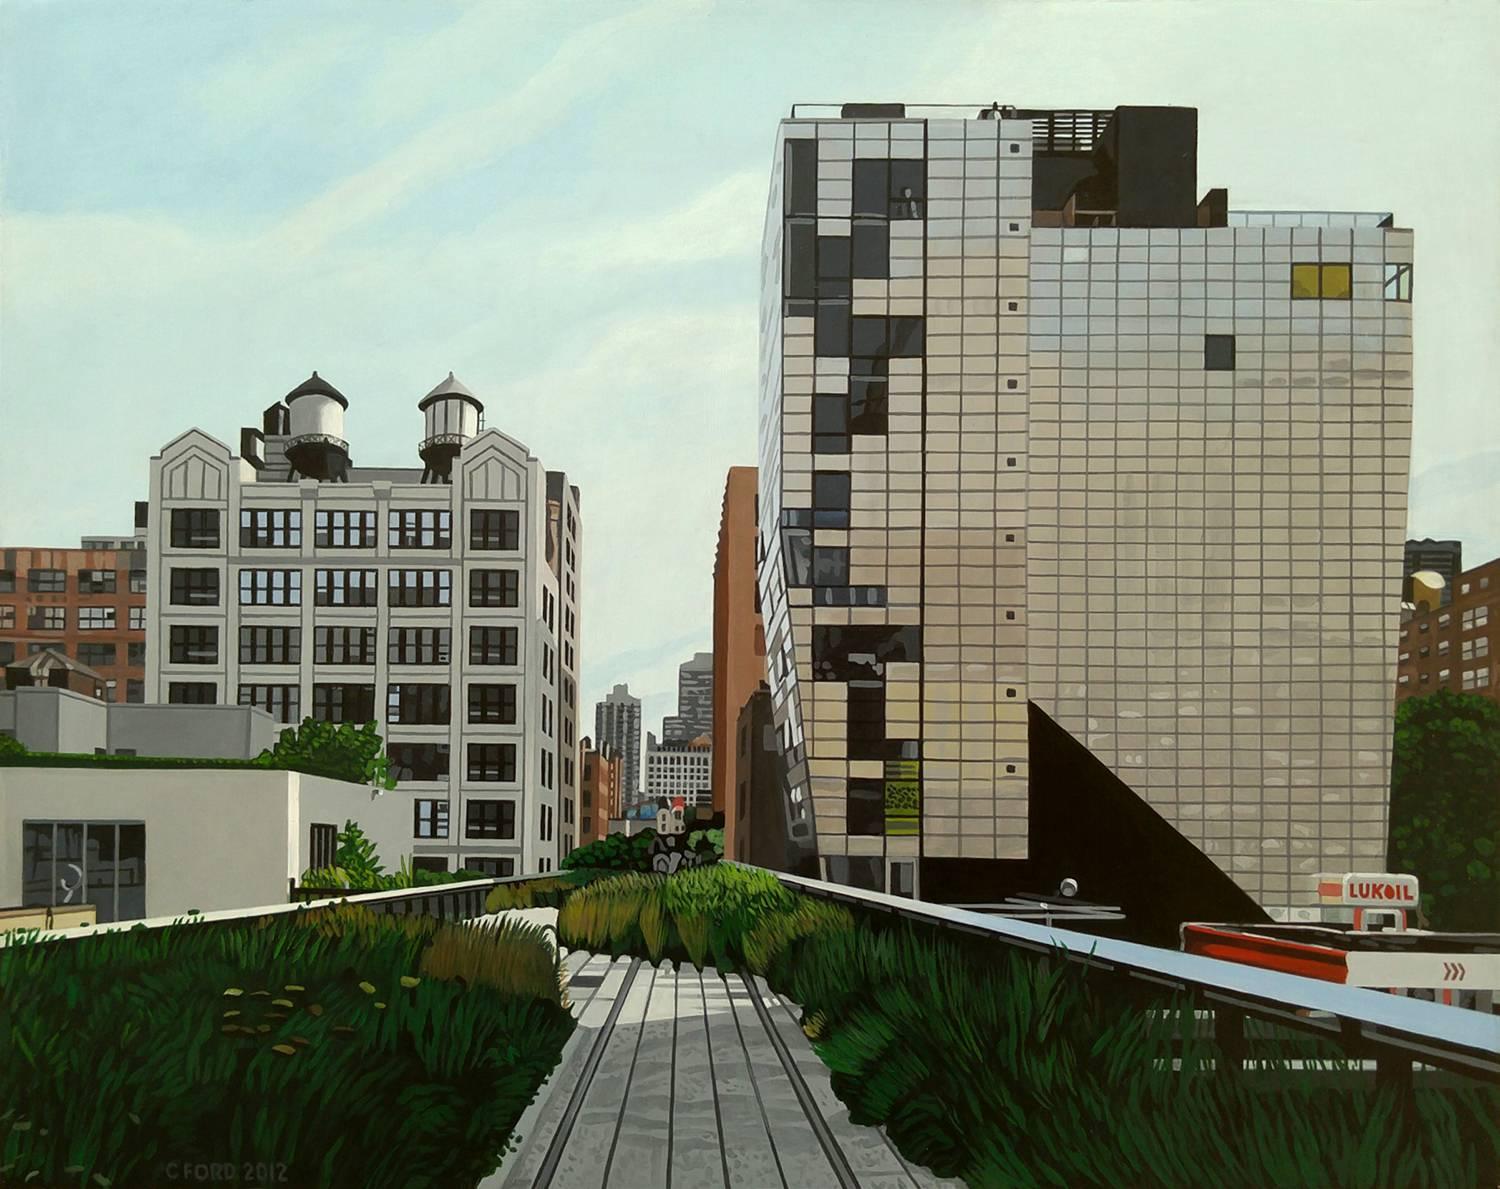 Das Werk von Charles Ford befindet sich in der ständigen Sammlung des Museum of the City of New York.

Ein weiteres herausragendes Landschaftsgemälde von Charles Ford, das sich auf die High Line in New York City konzentriert und die großartigen